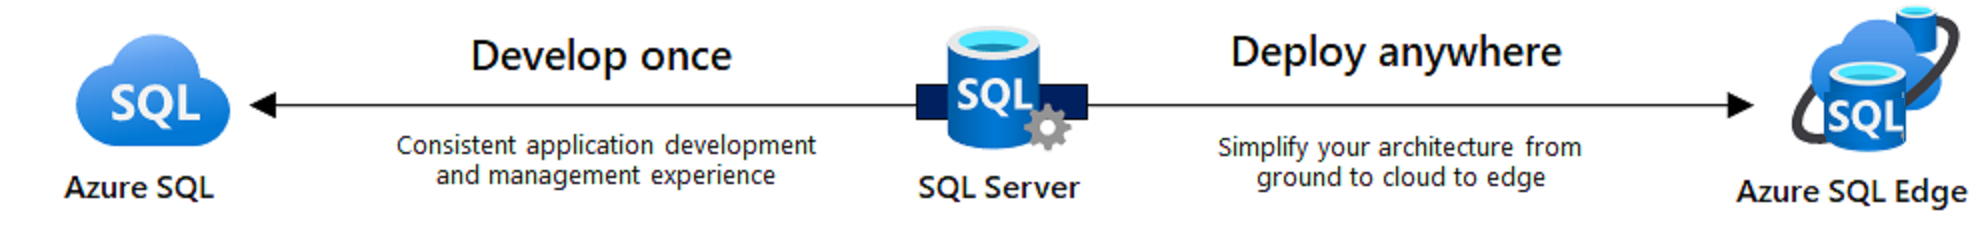 Depiction of Azure SQL, SQL Server, and Azure SQL Edge.